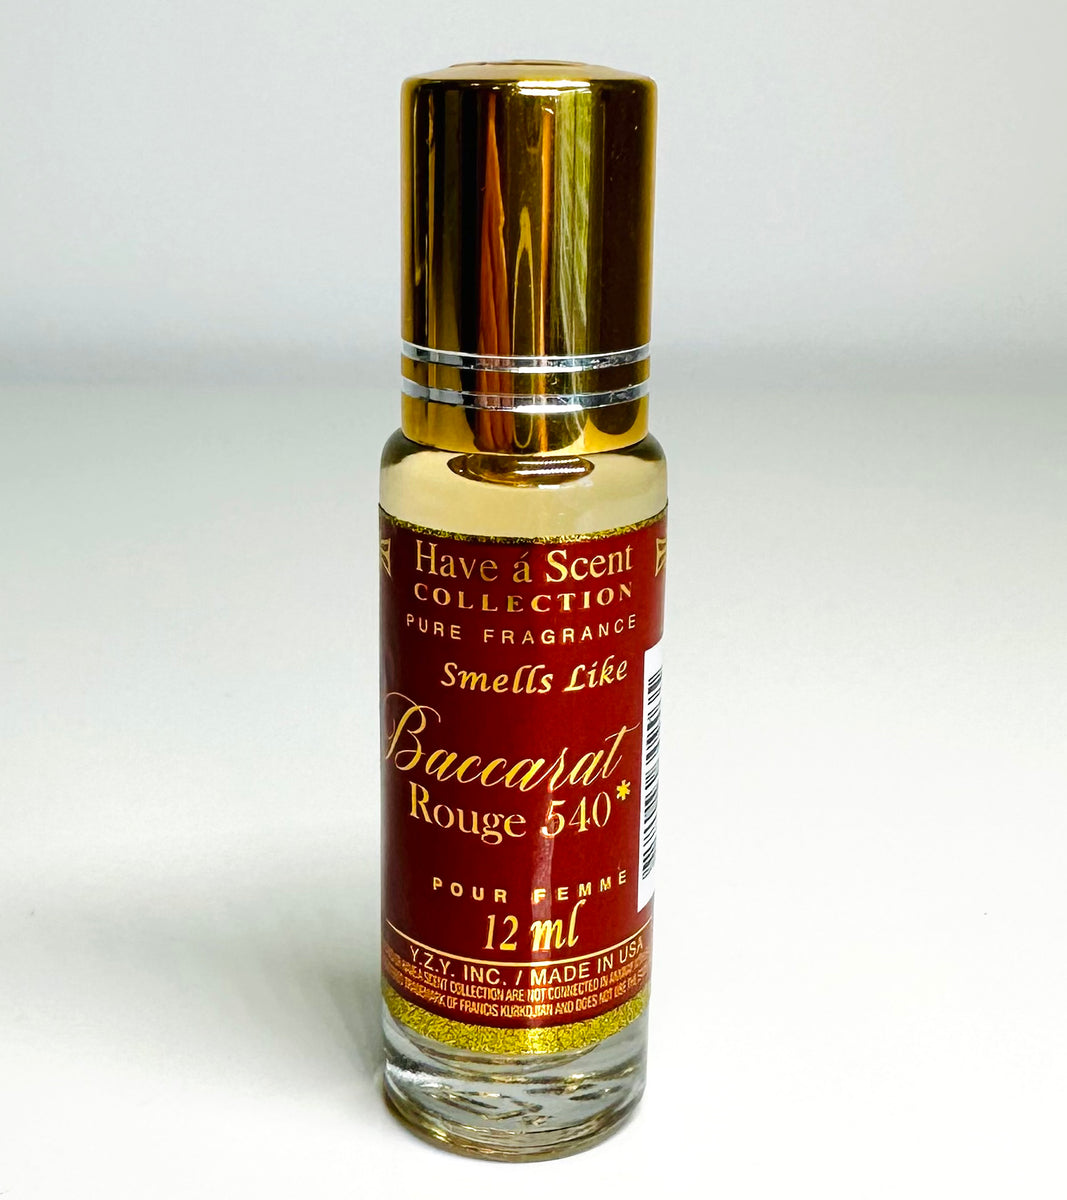 Baccarat Rouge 540 Fragrance Oil